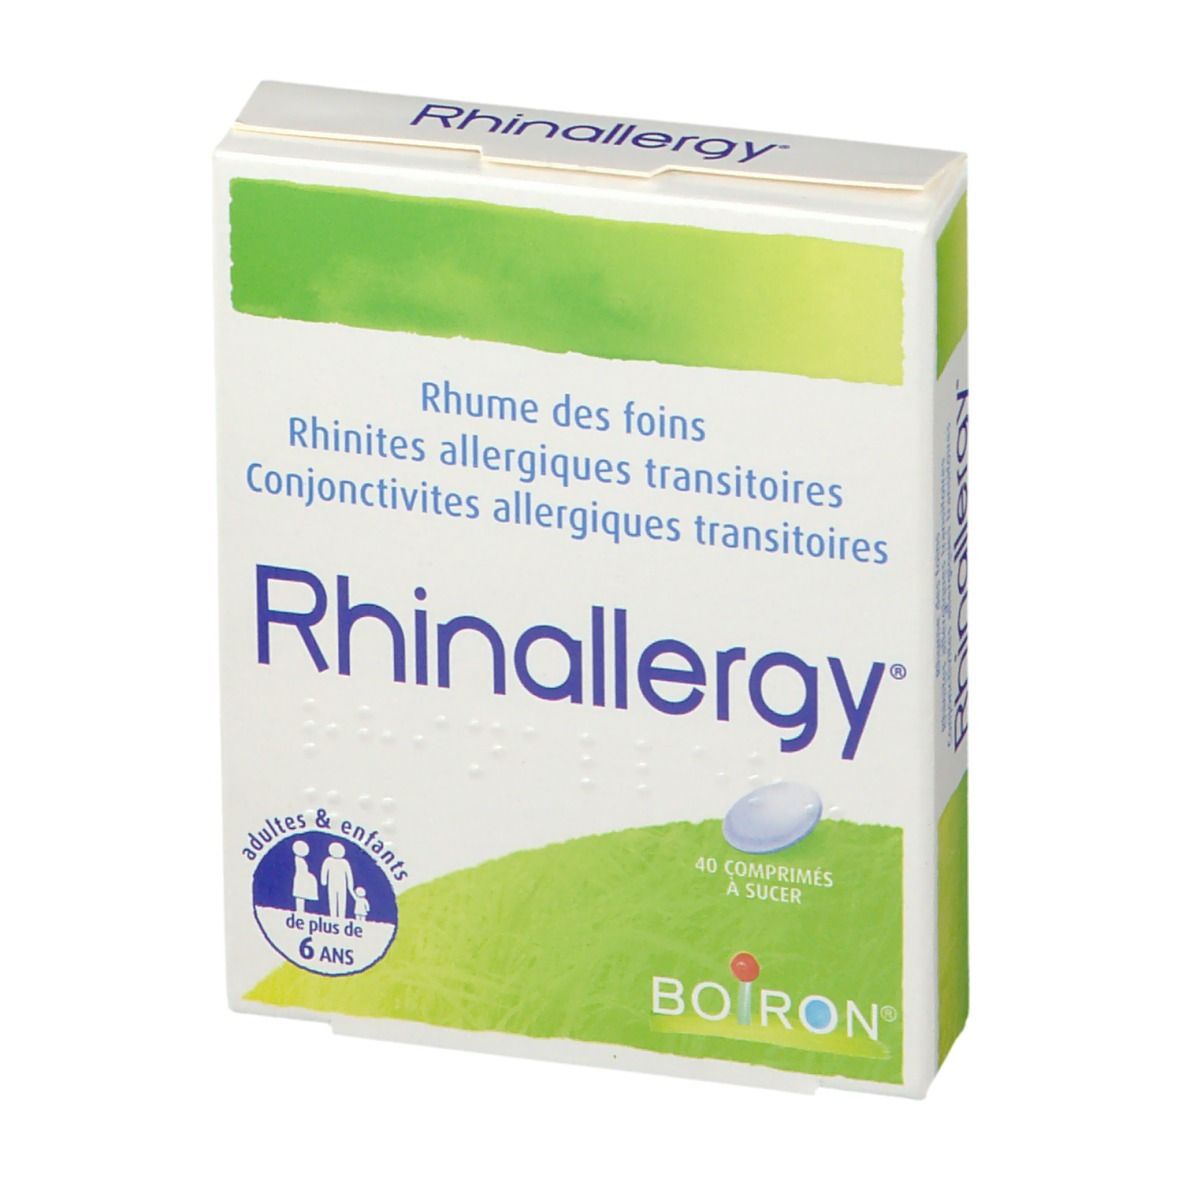 Boiron Rhinallergy®